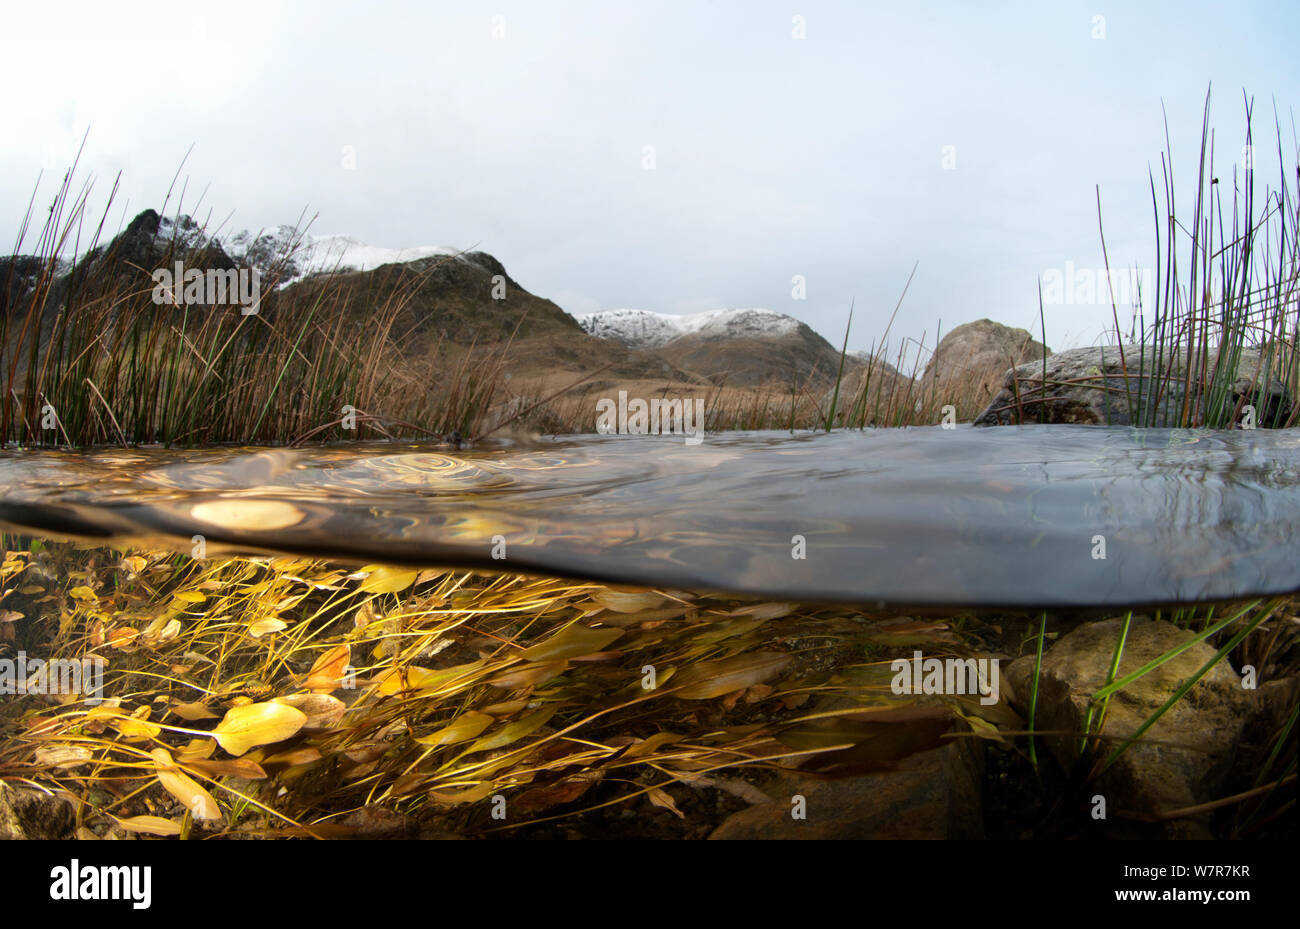 Un livello diviso immagine dell'habitat in un lago di montagna, che mostra delle erbe e delle alghe, Llyn Idwal, Snowdonia, Galles, Dicembre 2009 Foto Stock